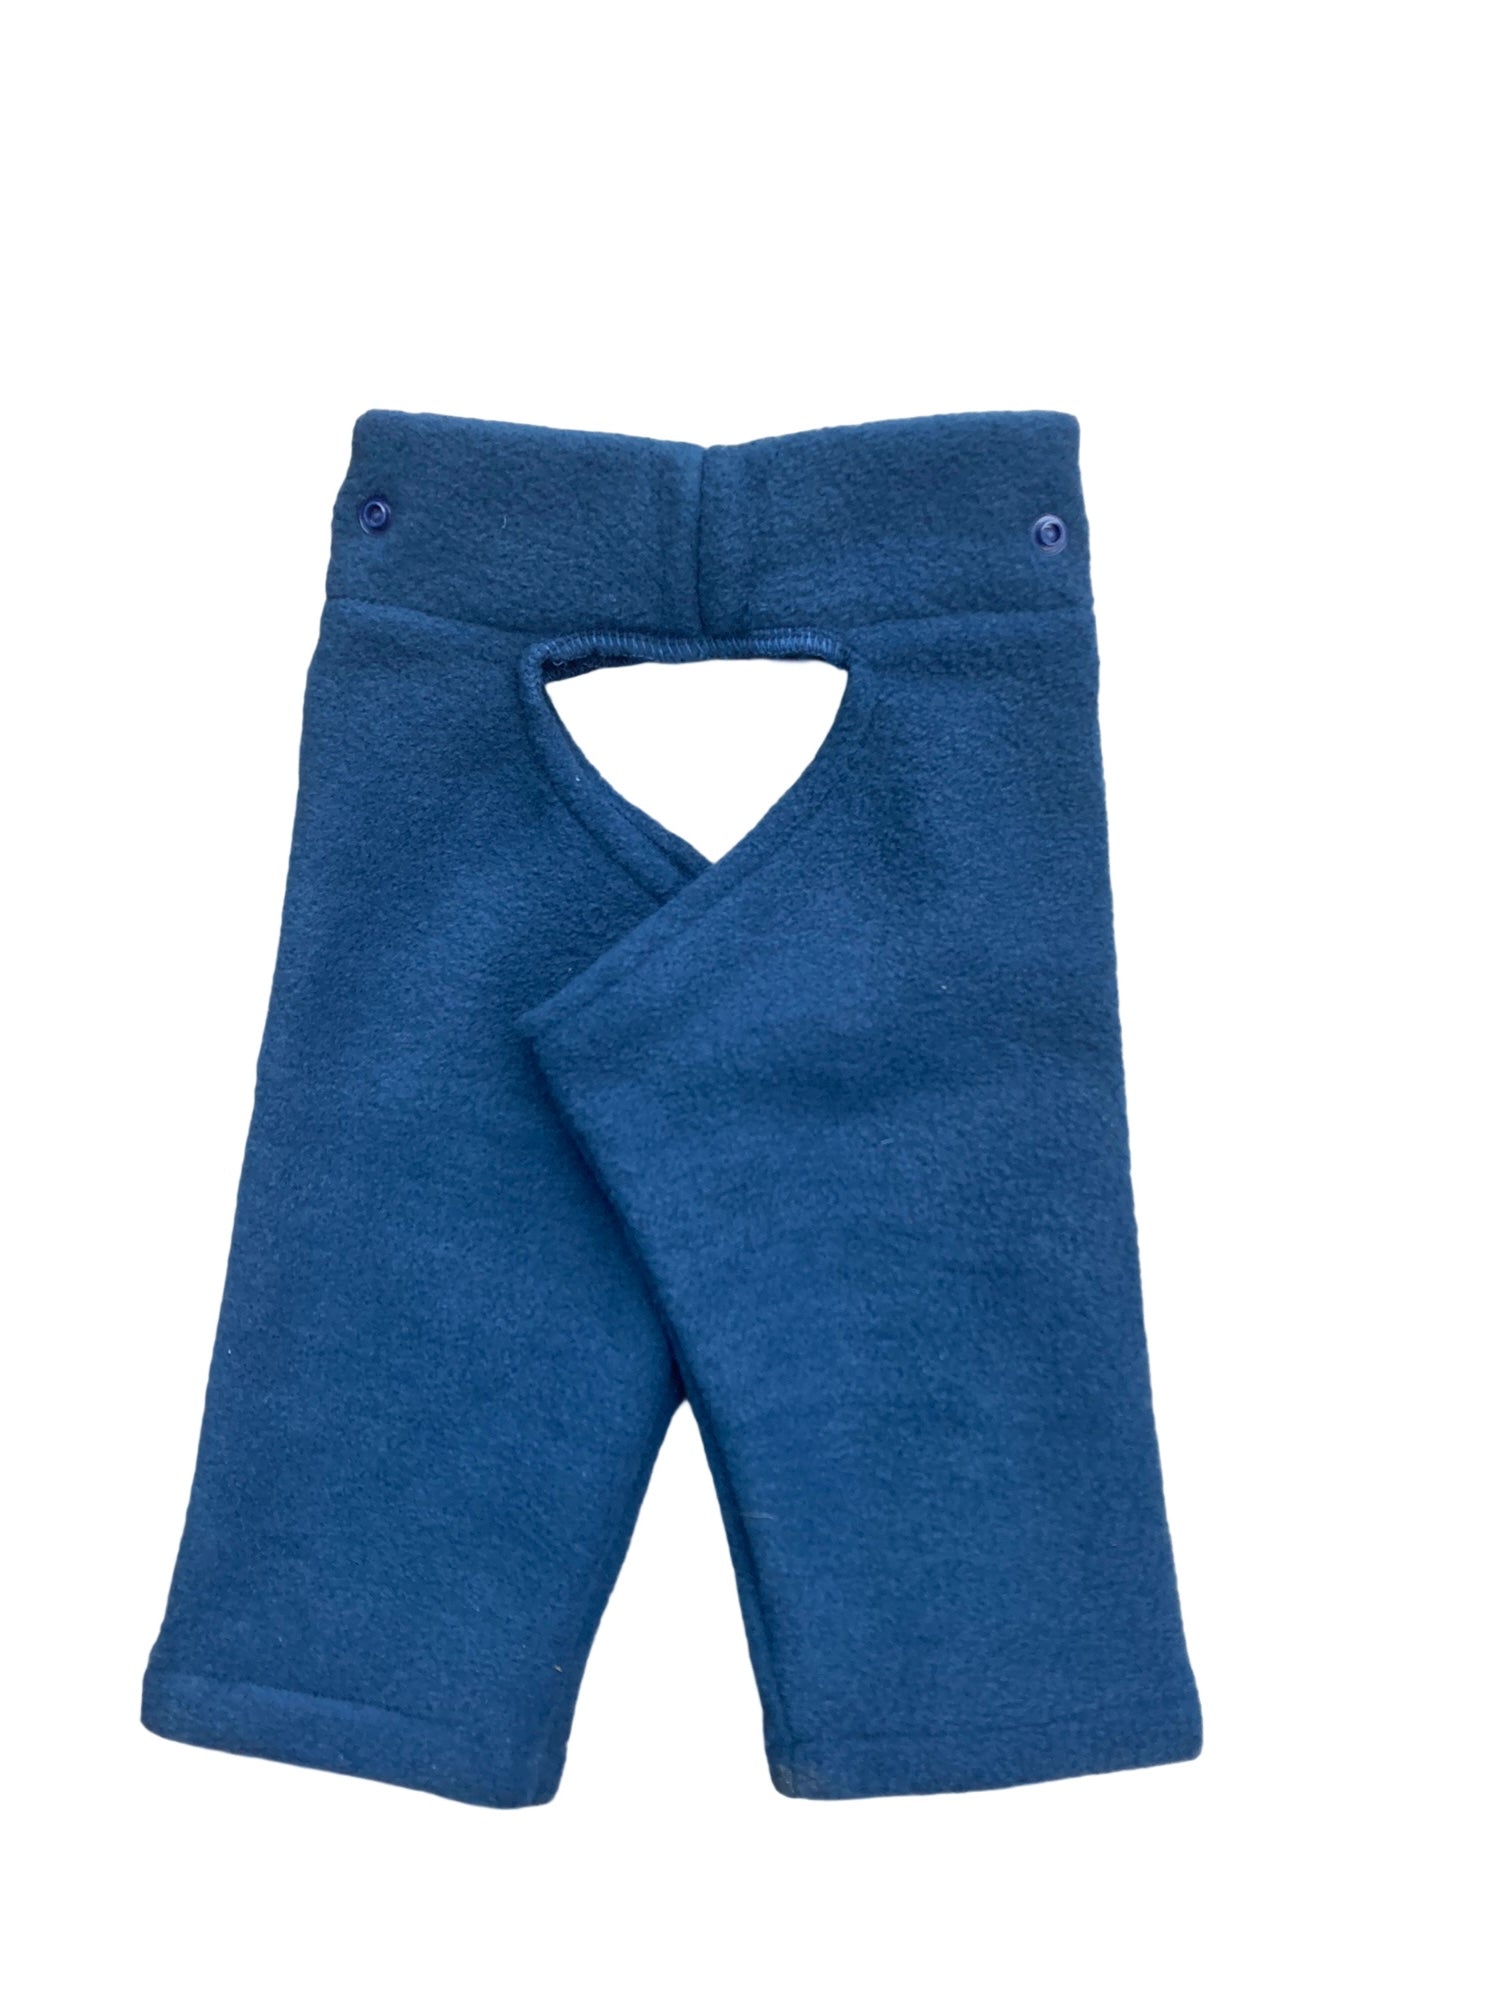 Royal Blue Chappy-Nappy Pants